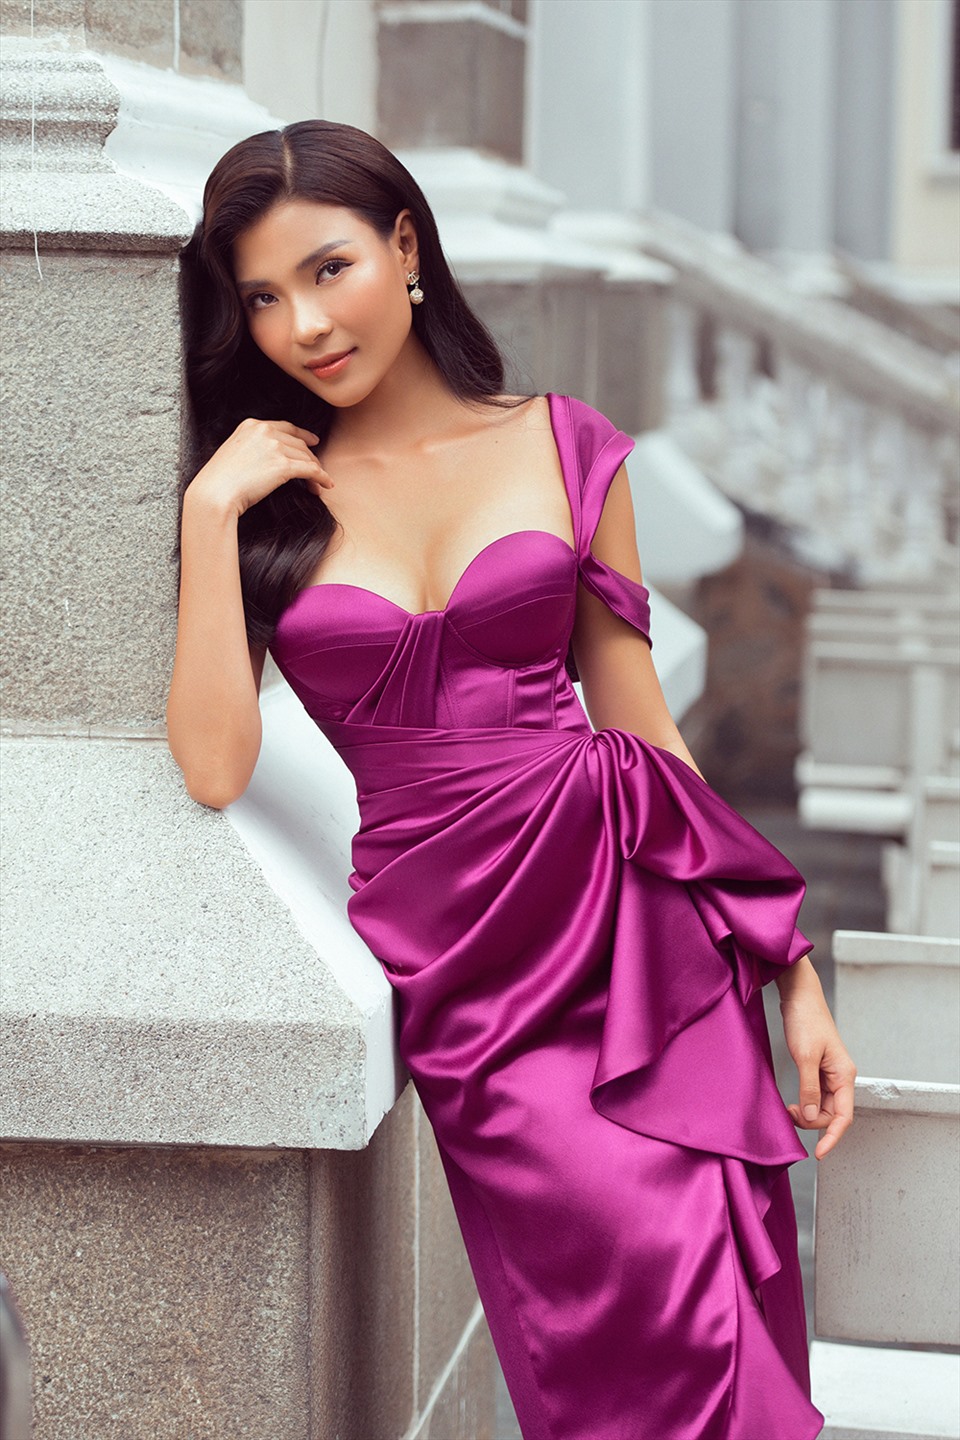 Thúy Diễm sinh năm 1986, cô cũng là một trong những quý cô tuổi Dần viên mãn của showbiz Việt. Nữ diễn viên bắt đầu bước chân vào showbiz năm 2007, với vai trò người mẫu ảnh và đoạt danh hiệu Miss Sunplay. Sau khi lấn sân sang điện ảnh, nữ diễn viên nhanh chóng bỏ túi hàng chục vai diễn lớn nhỏ và nổi tiếng trong phim: Phận làm dâu, Gia đình là số 1...